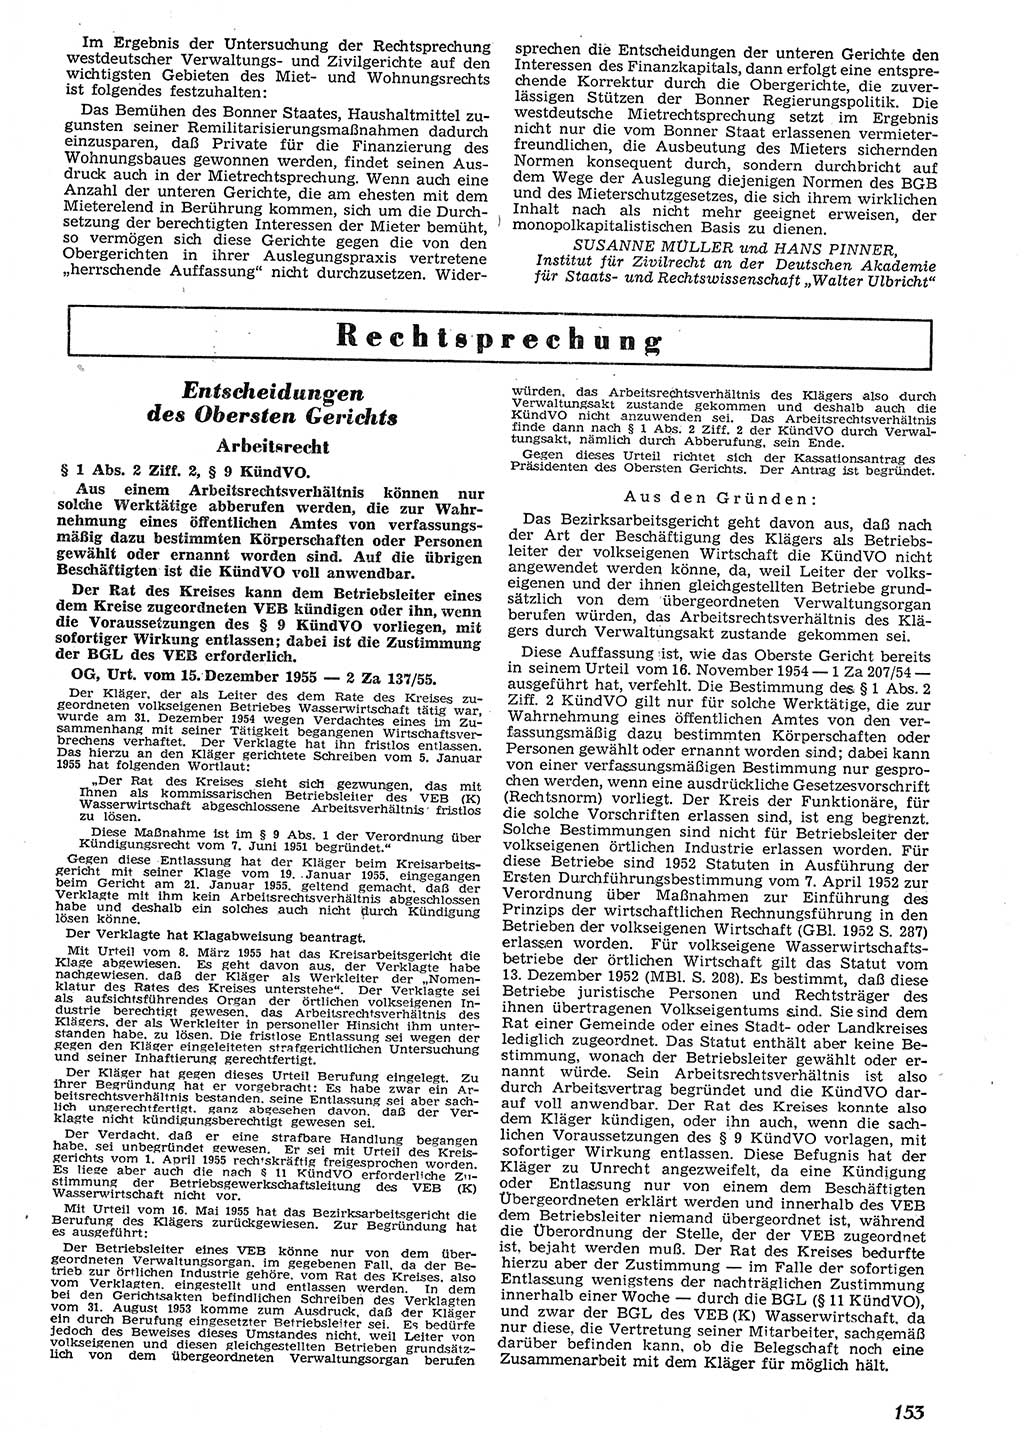 Neue Justiz (NJ), Zeitschrift für Recht und Rechtswissenschaft [Deutsche Demokratische Republik (DDR)], 10. Jahrgang 1956, Seite 153 (NJ DDR 1956, S. 153)